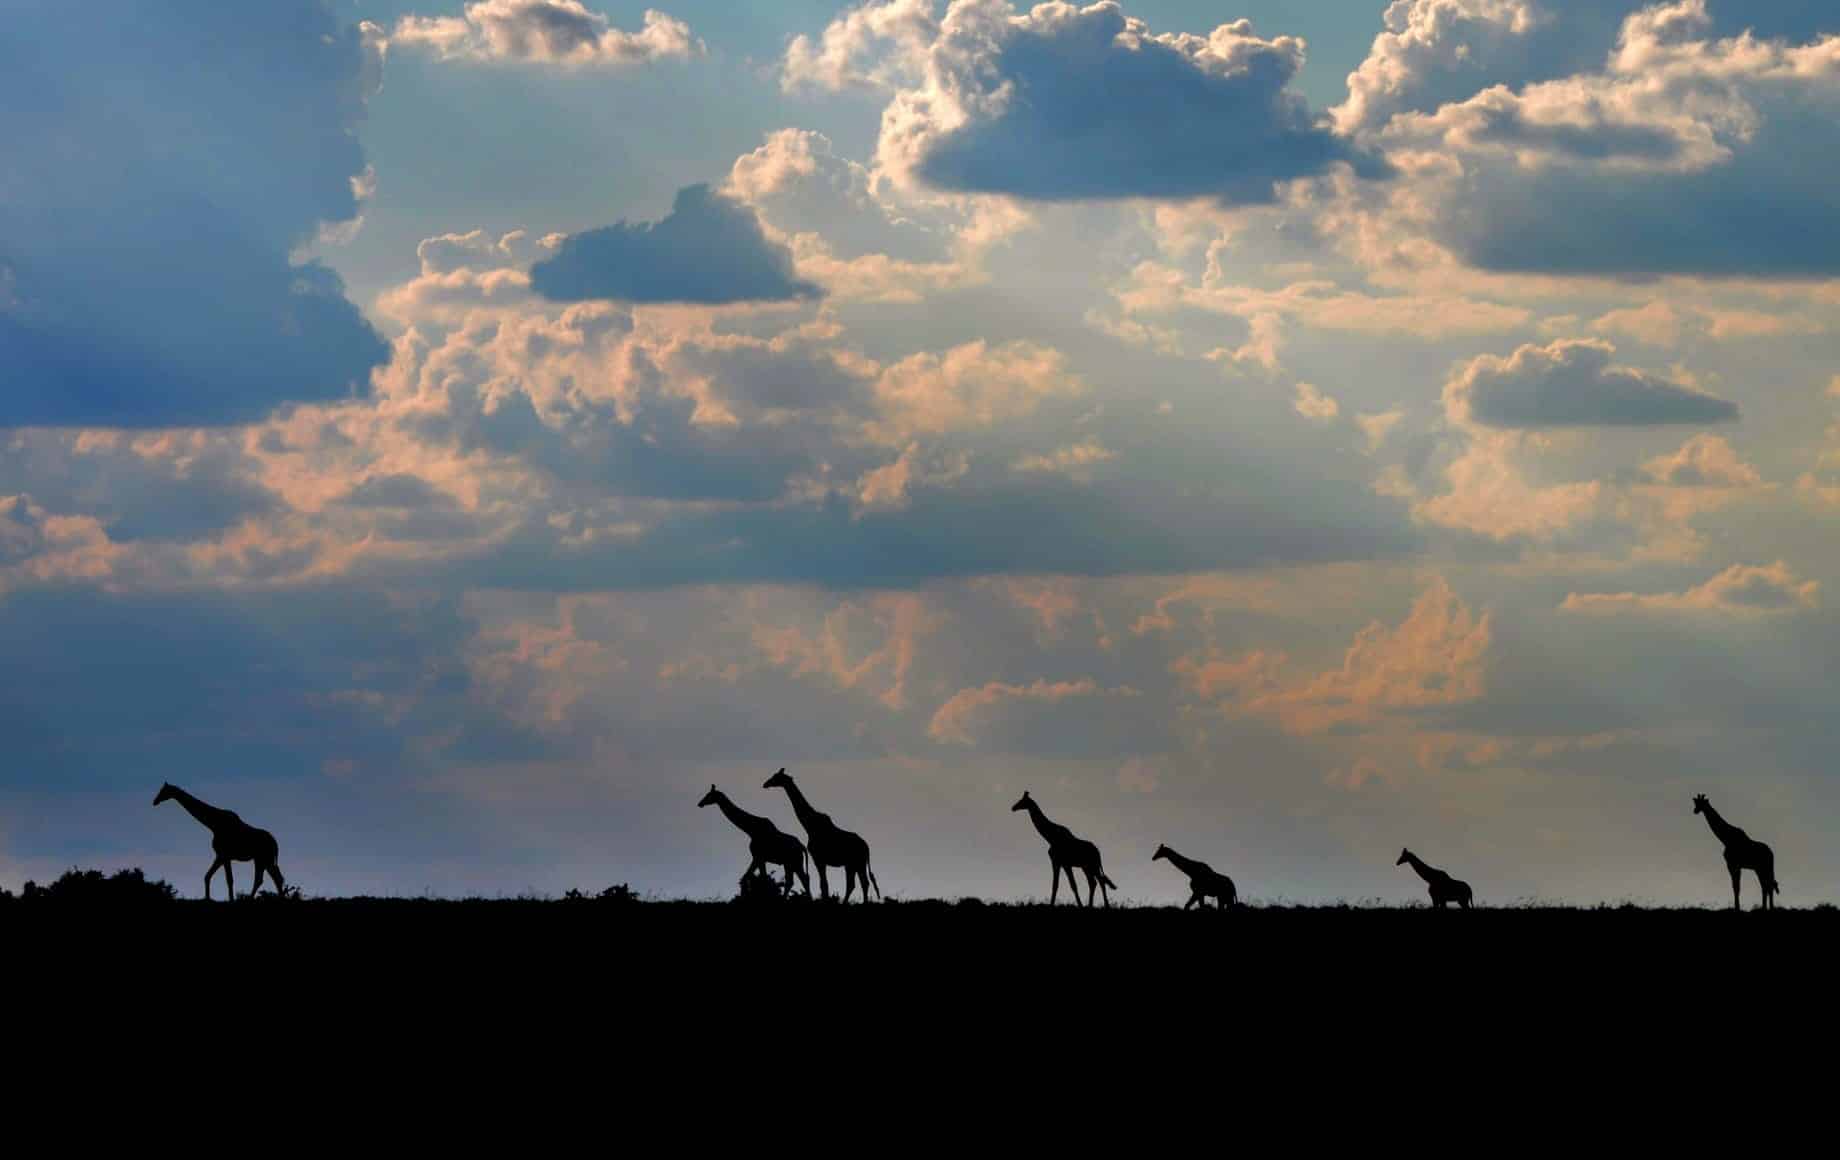 Groups of Giraffes